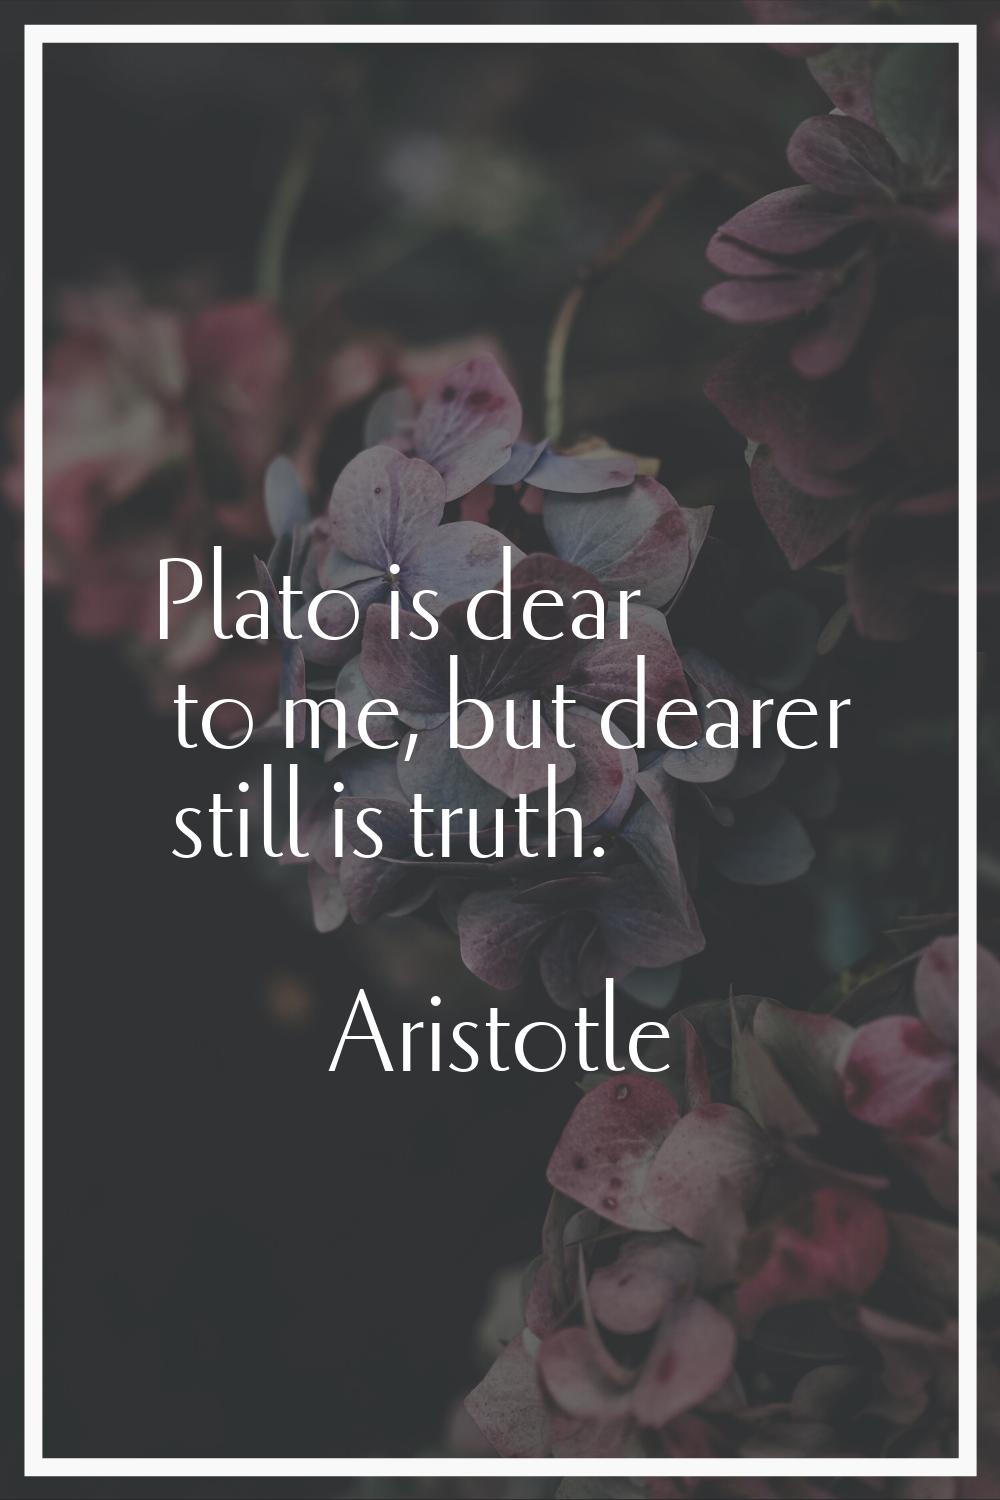 Plato is dear to me, but dearer still is truth.